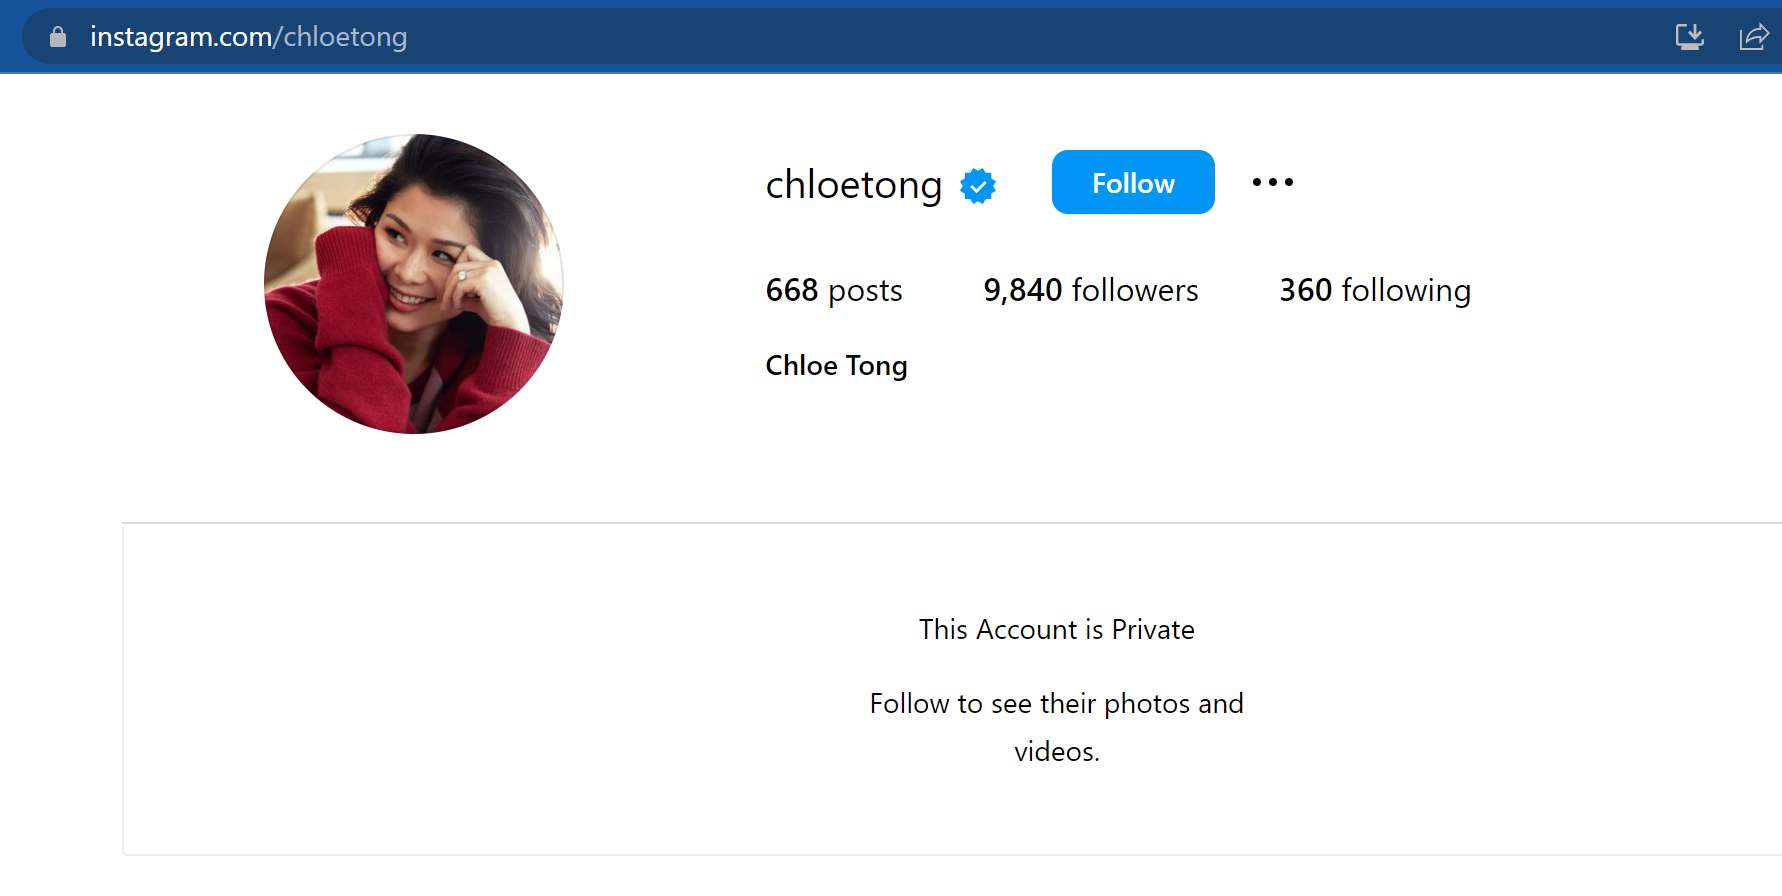 Chloe Tong, istri salah satu pendiri Grab (Anthony Tan), Akun IG @chloetong di private?